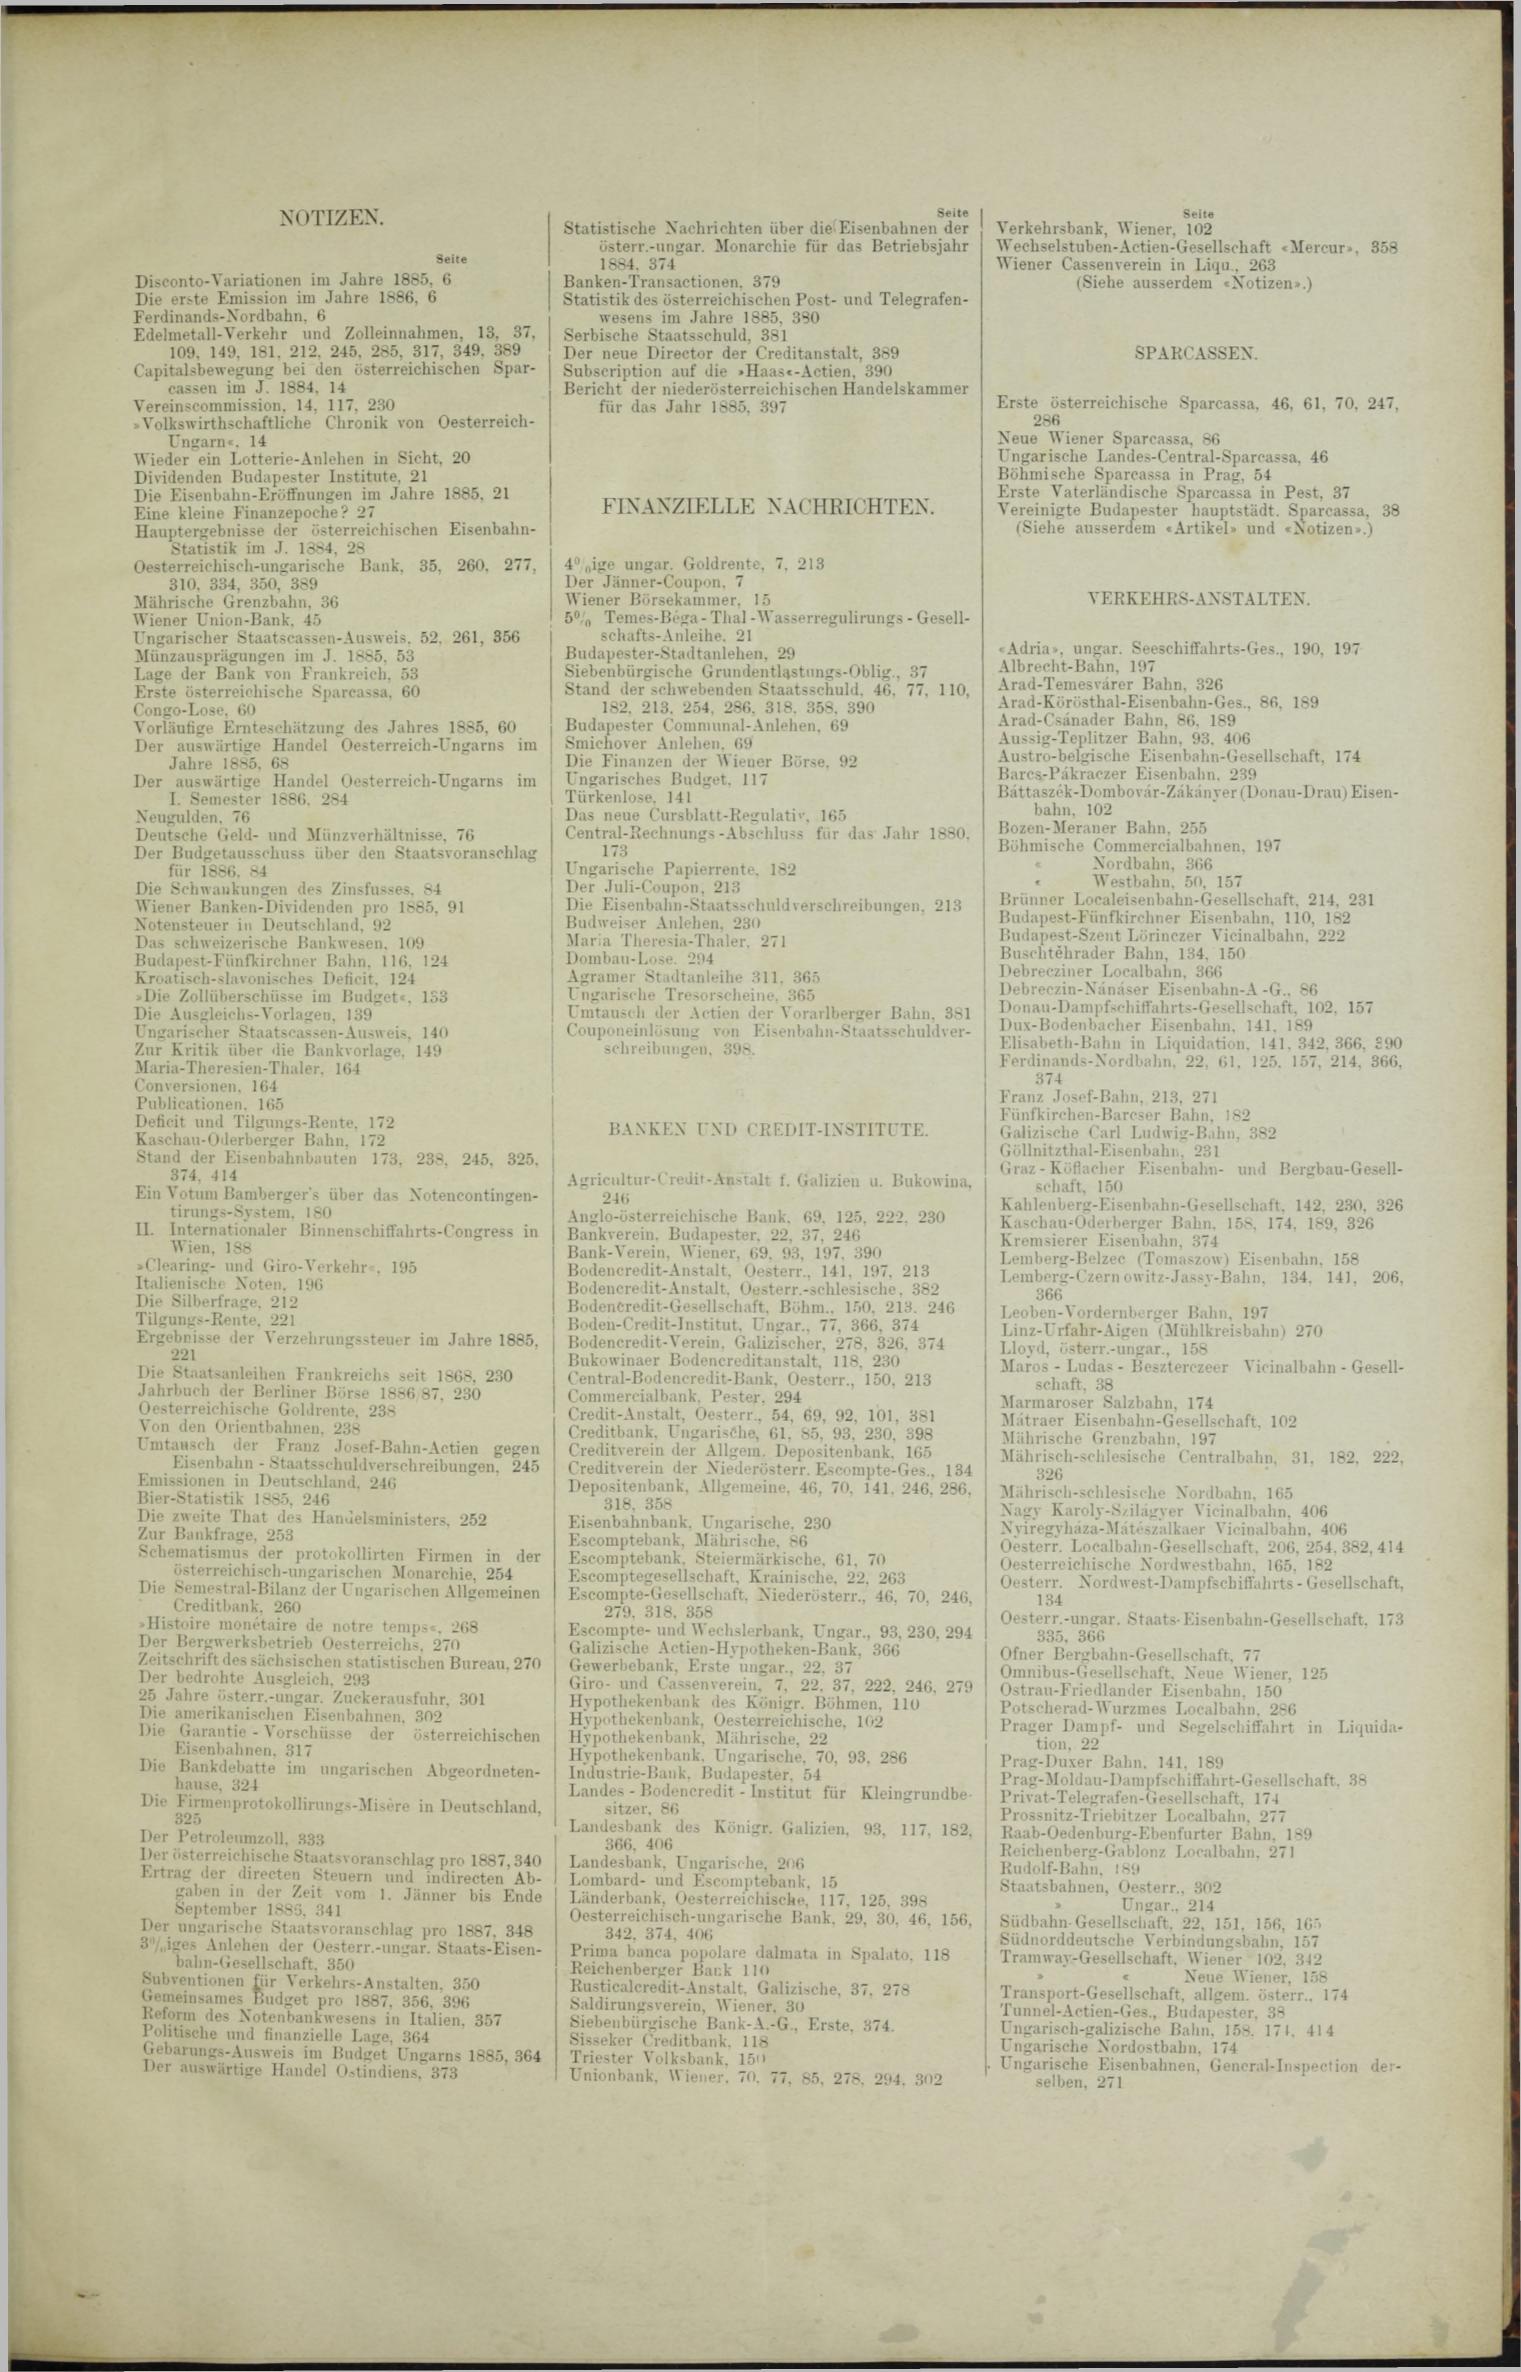 Der Tresor 15.04.1886 - Seite 11